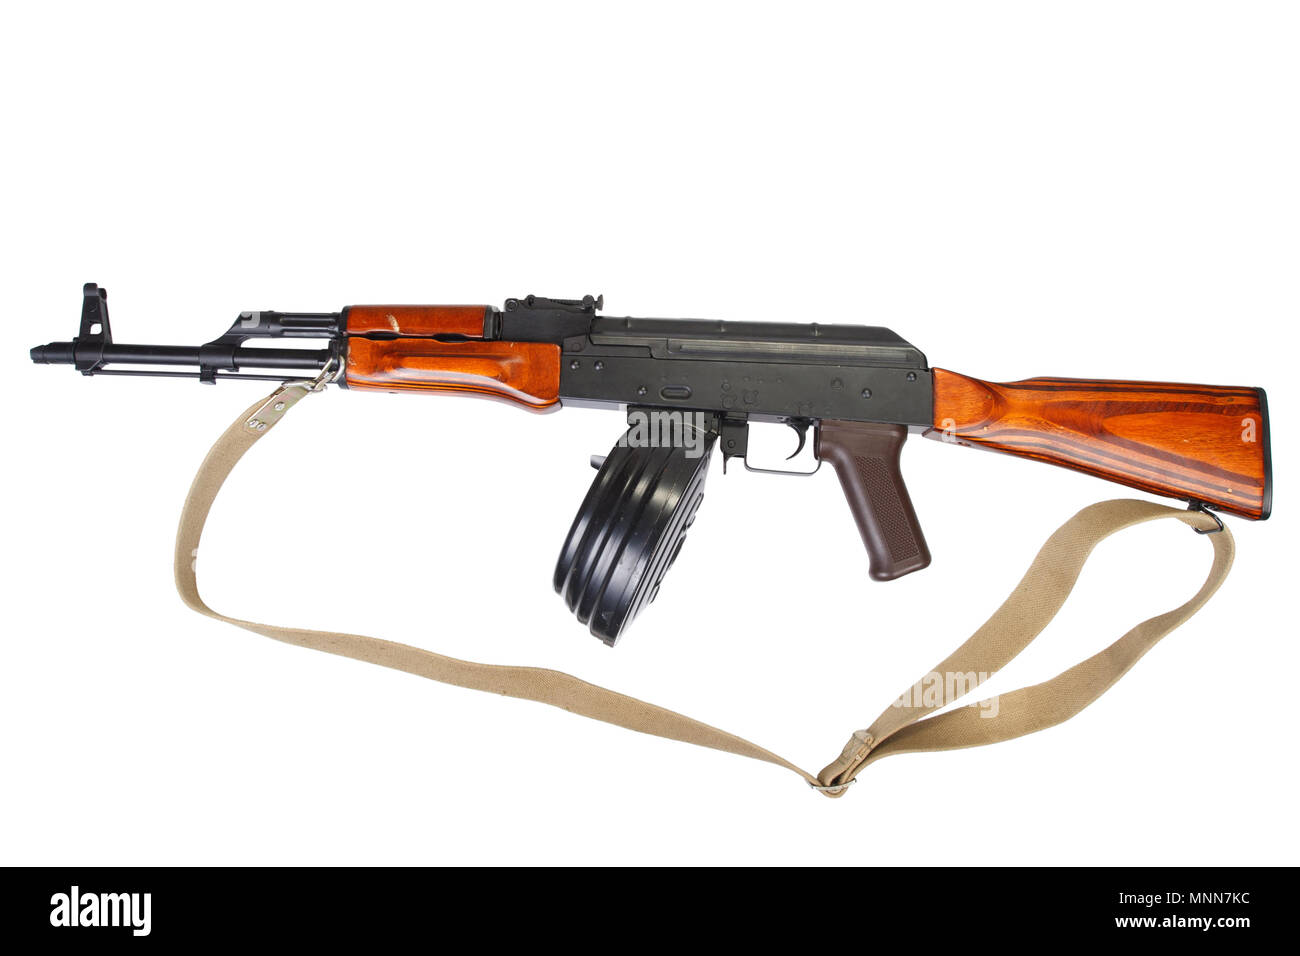 AKM (Avtomat Kalashnikova) Kalashnikov assault rifle with 75 Round ...